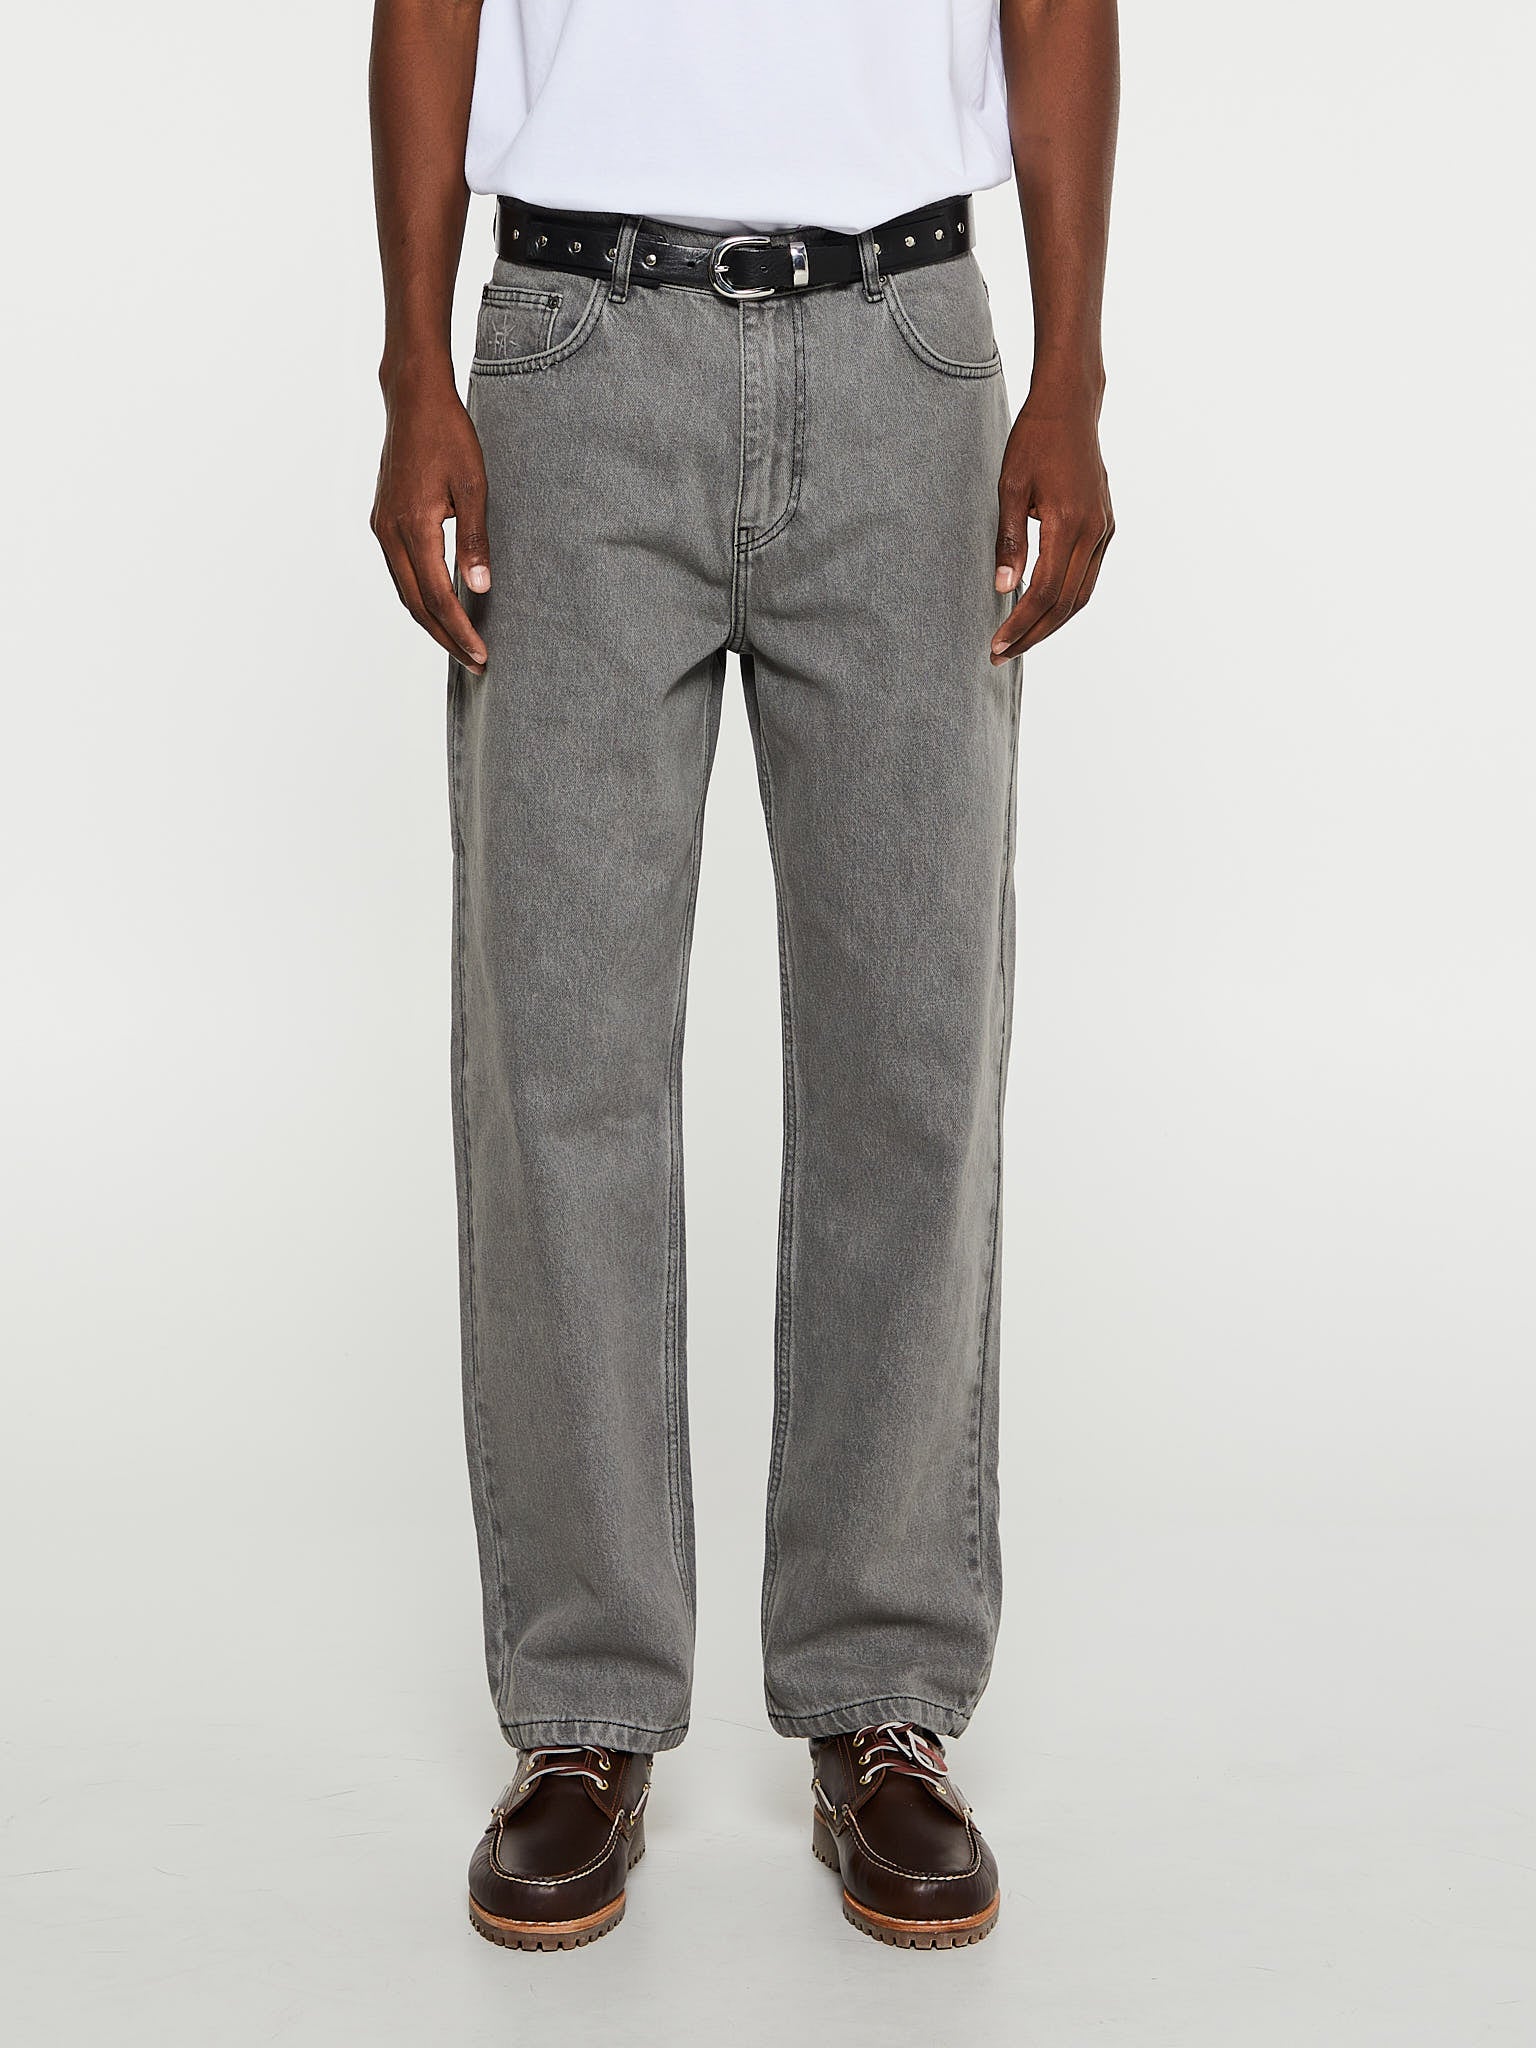 Hammerle Pants in Grey